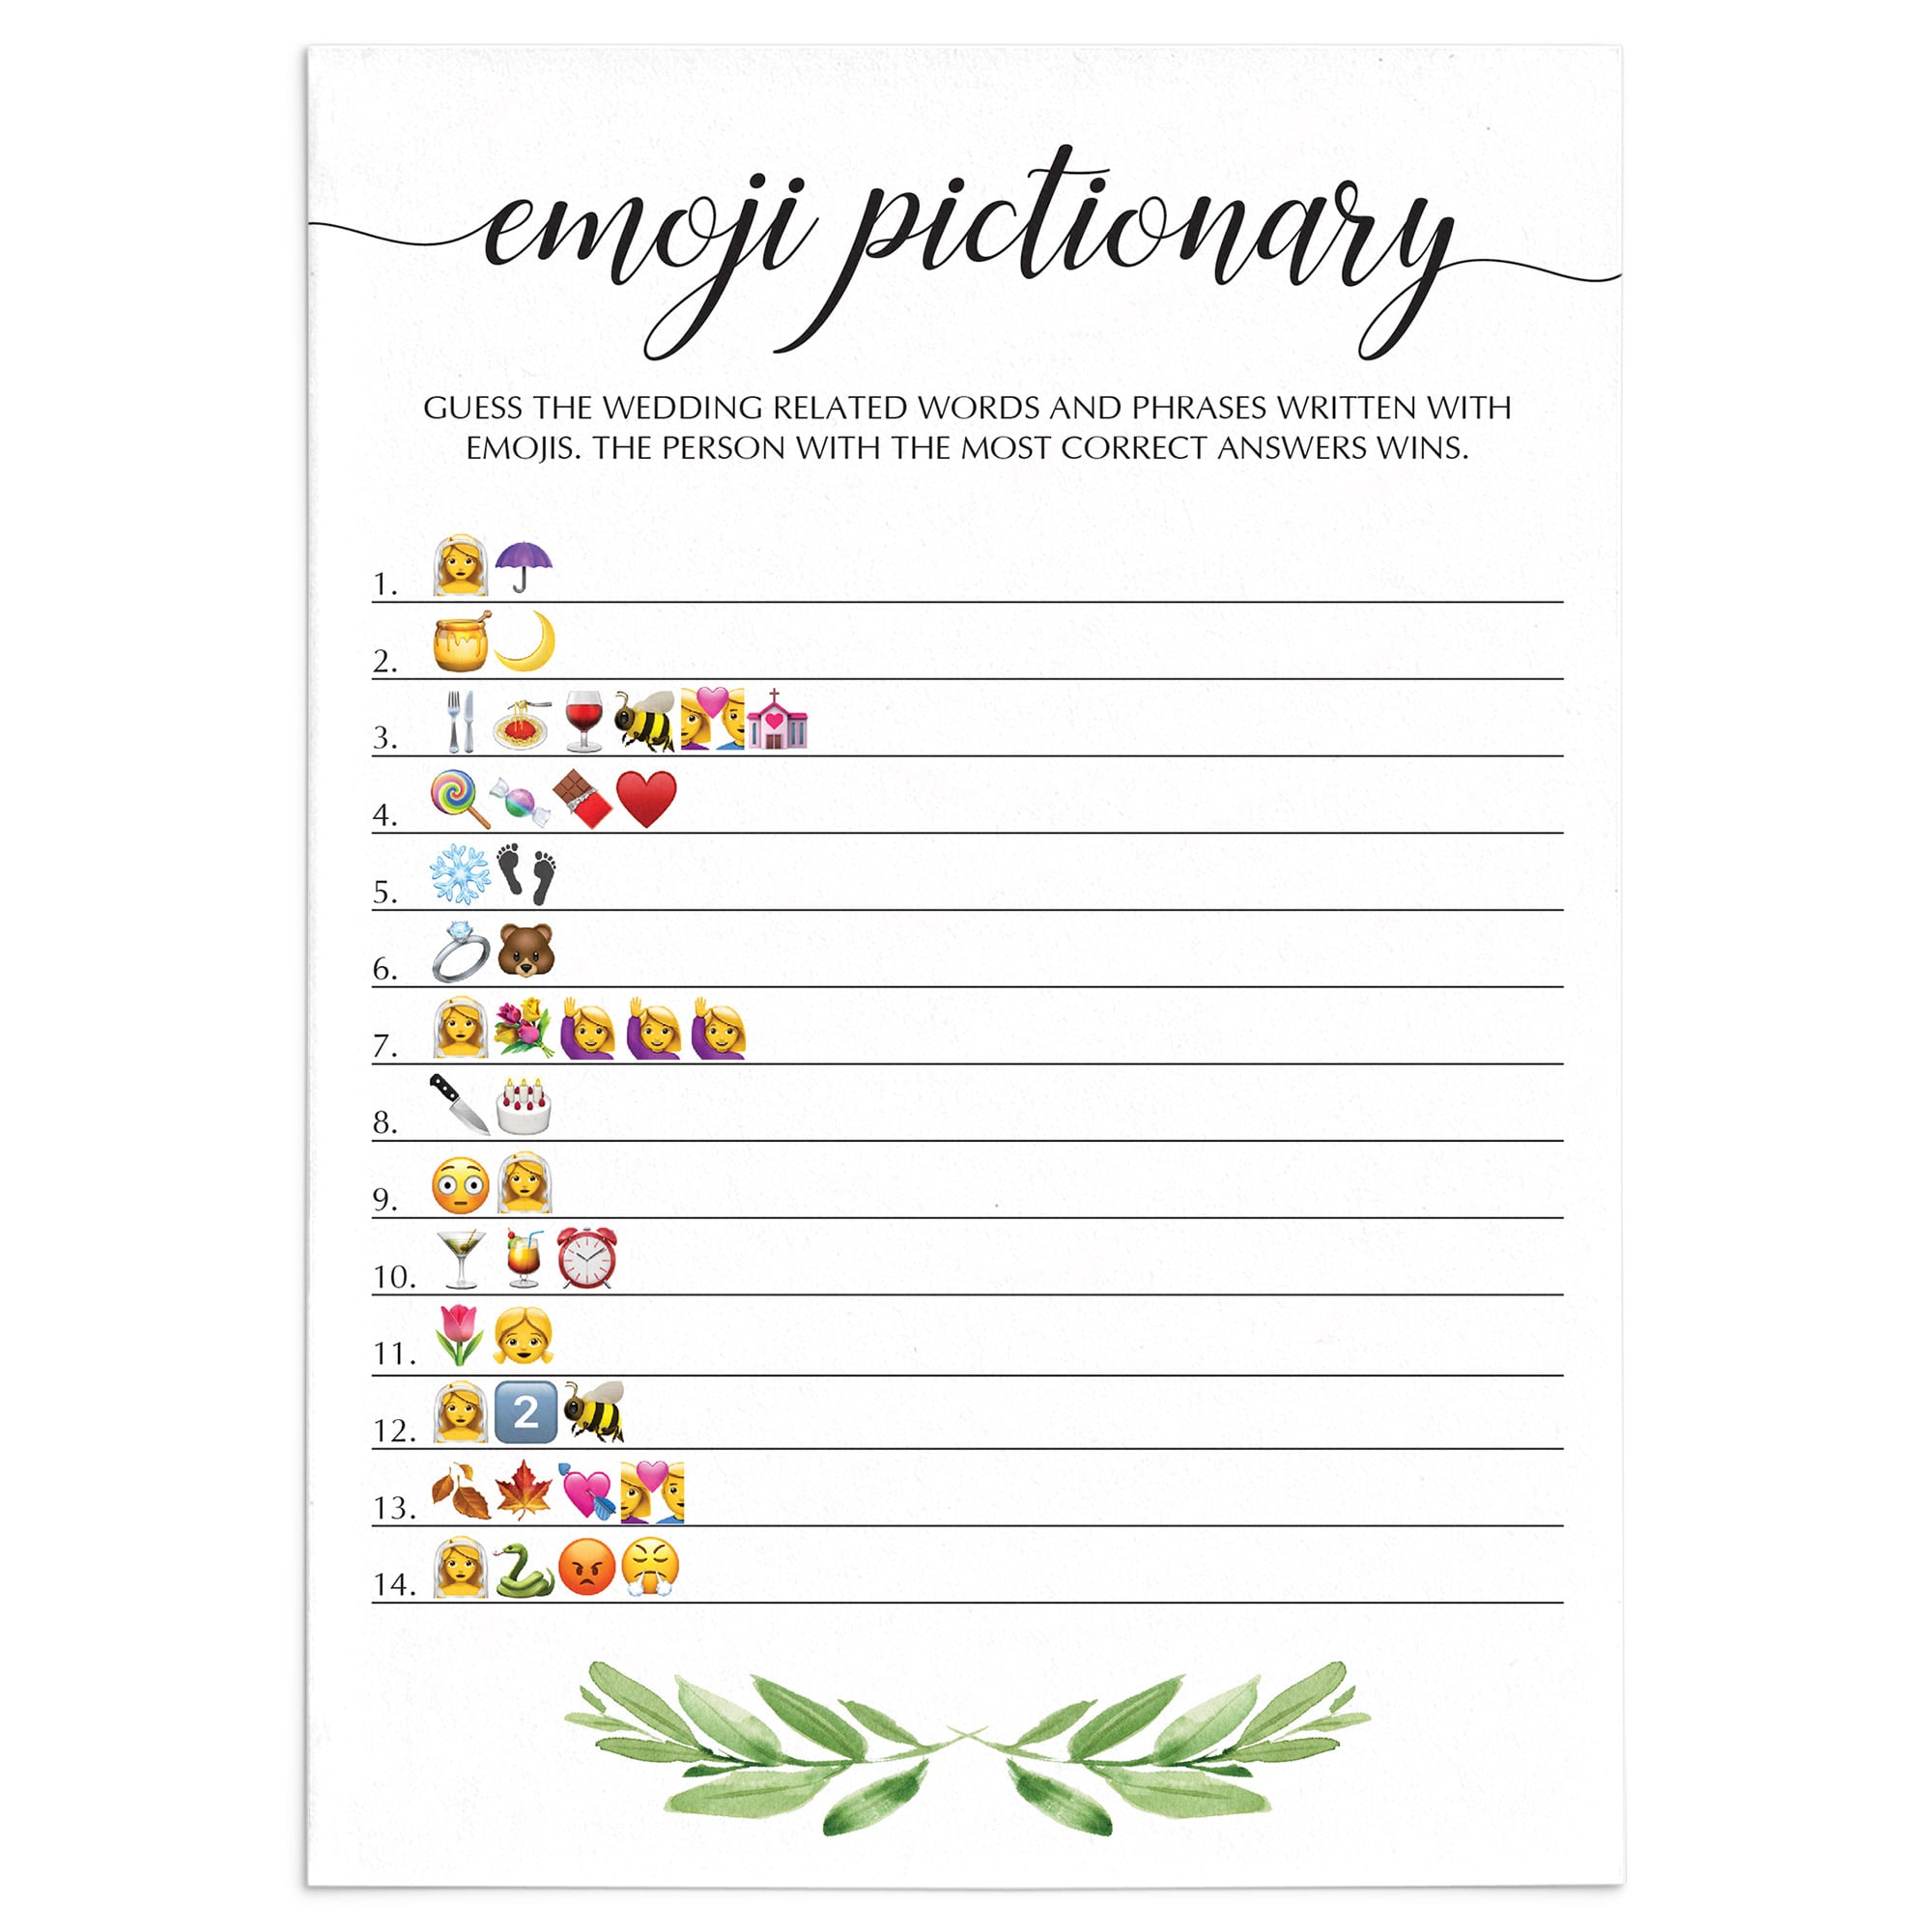 botanical bridal shower emoji pictionary game by LittleSizzle